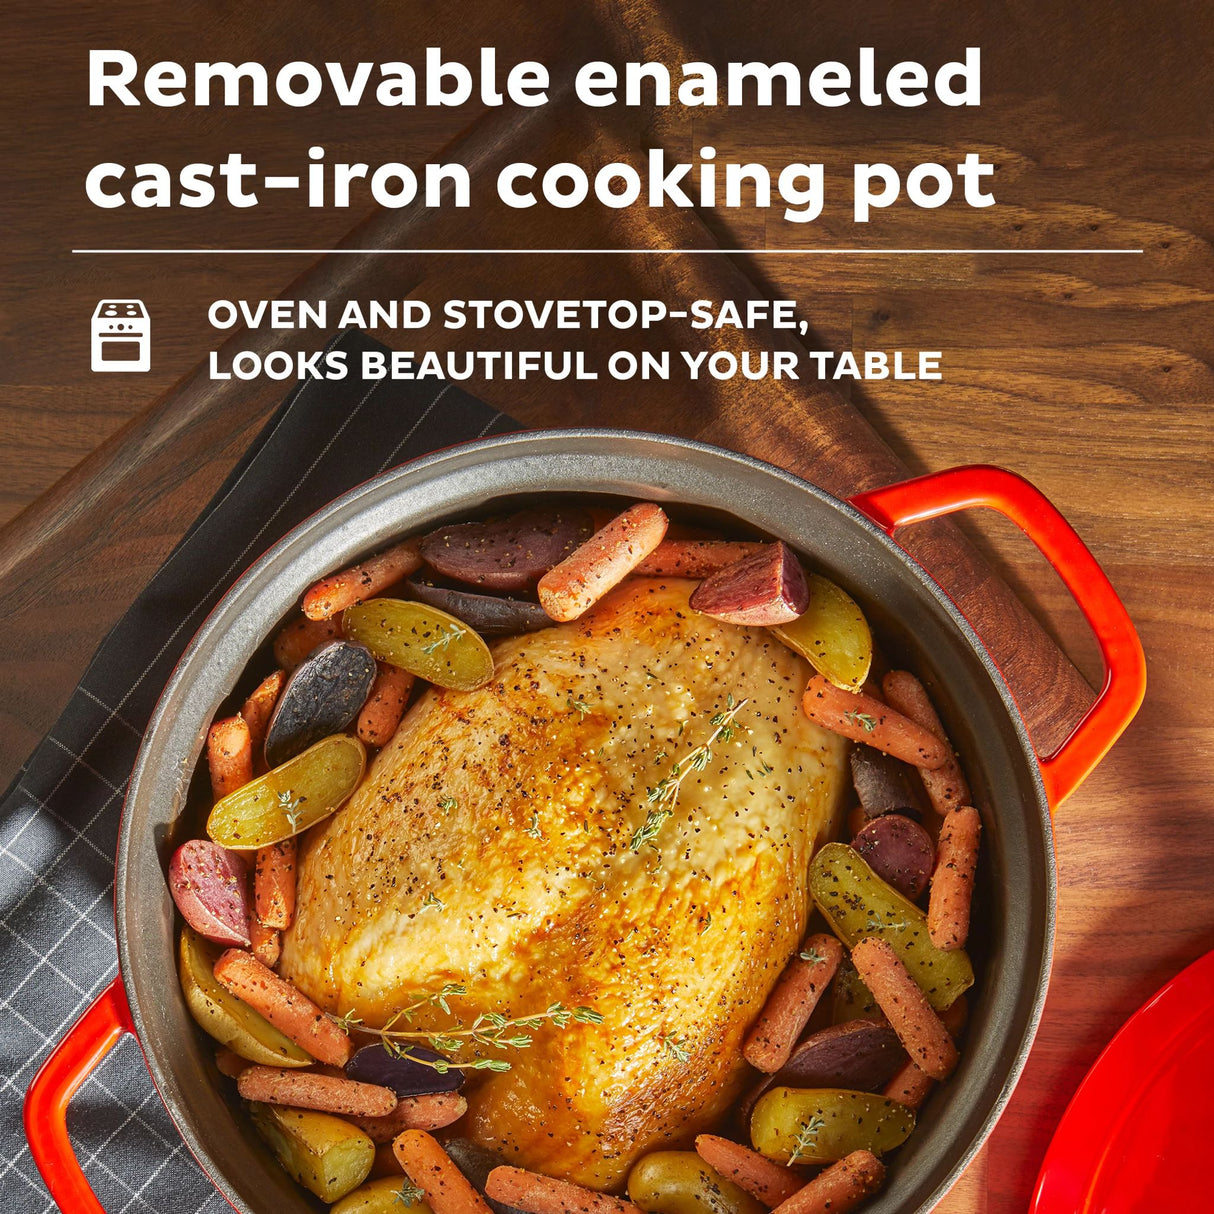  Instant Precision 6-quart Dutch Oven removable enameled cast-iron cooking pot